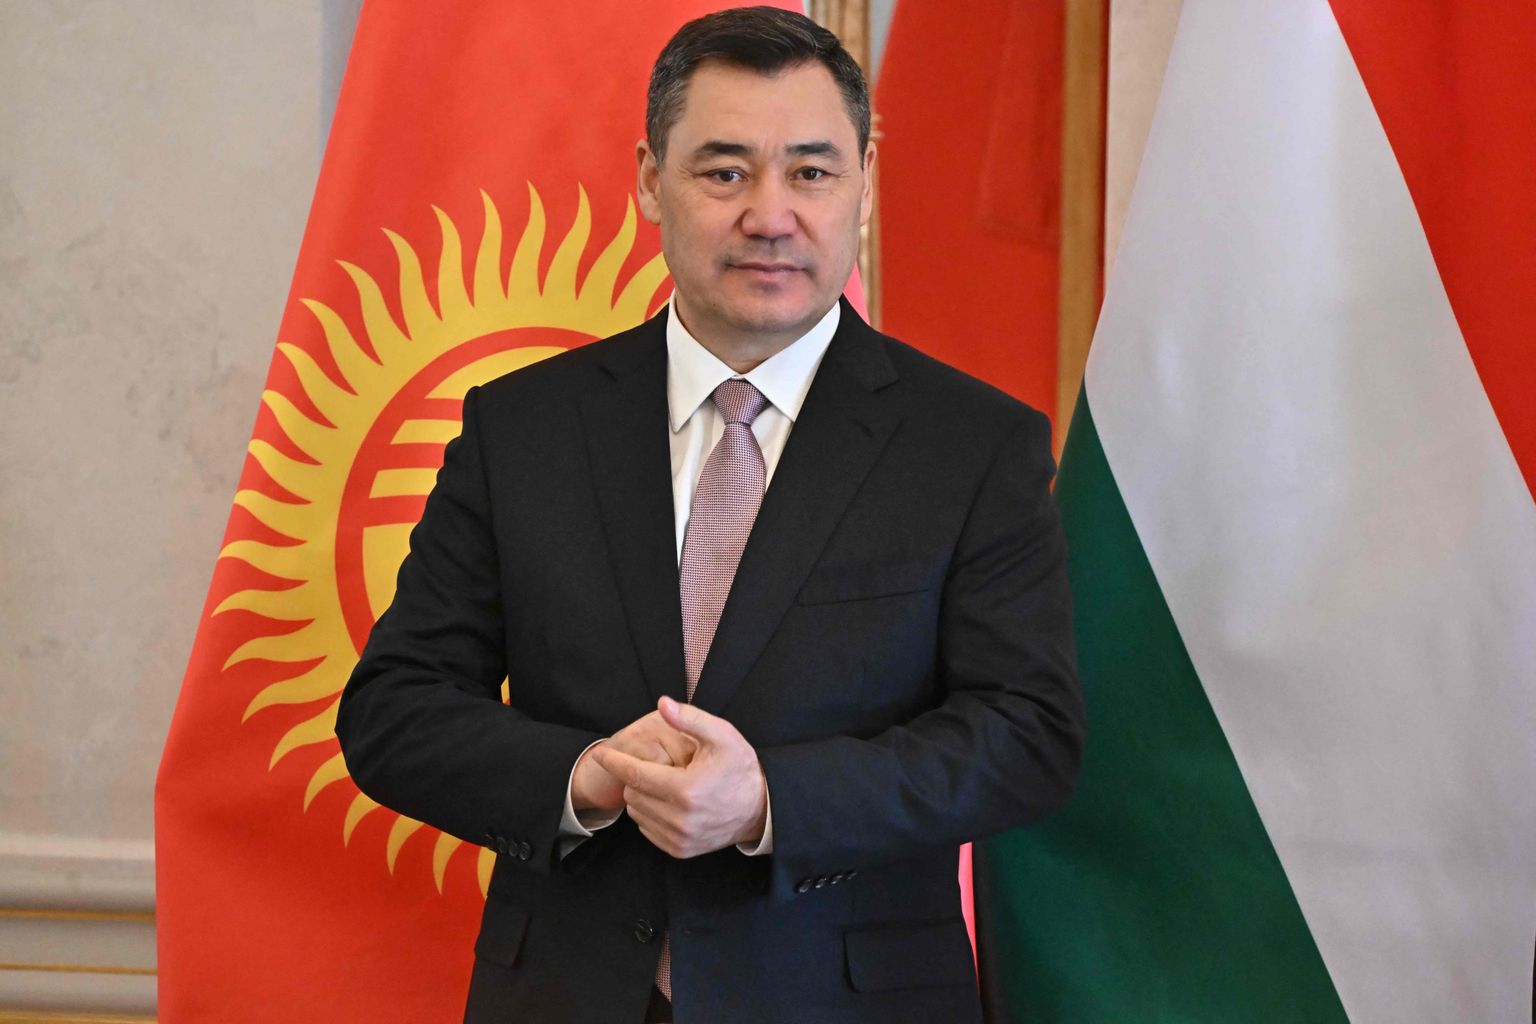 Kõrgõzstani president Sadõr Džaparov